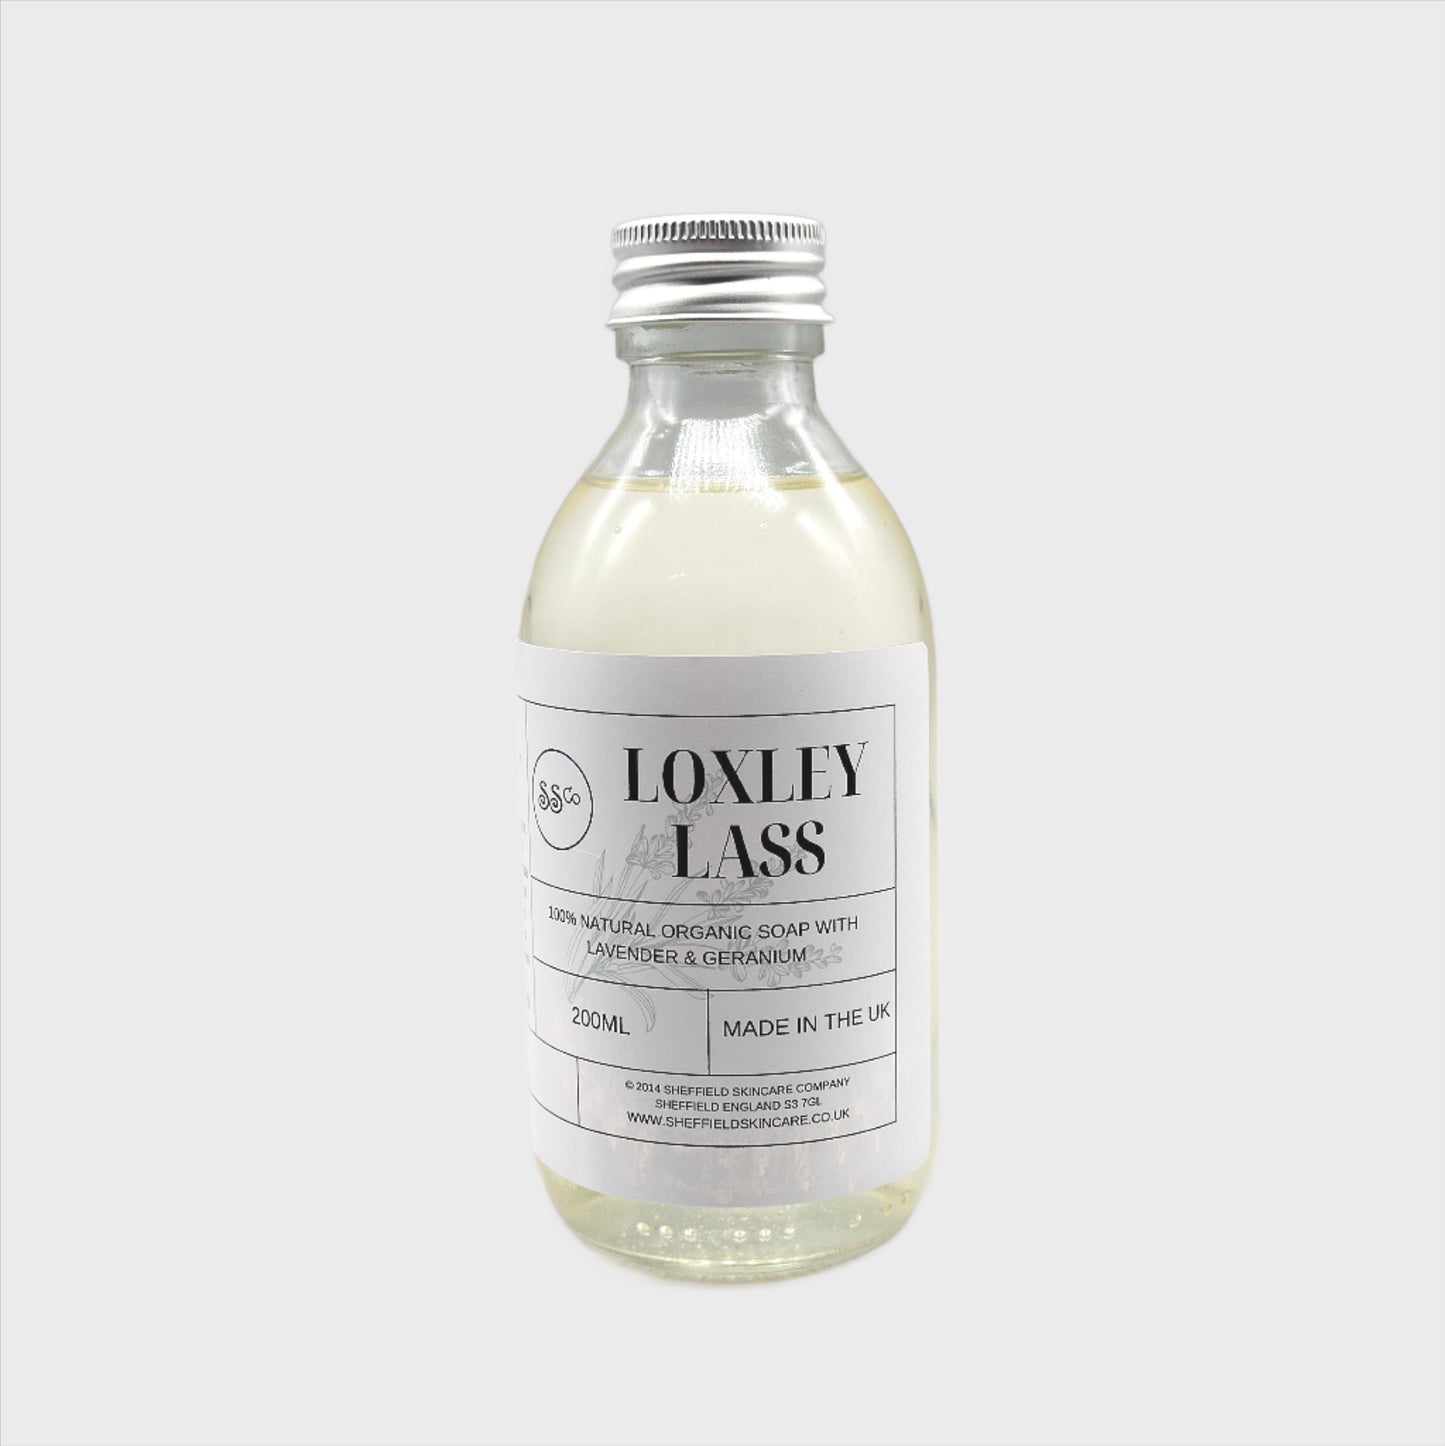 Loxley Lass Liquid Soap